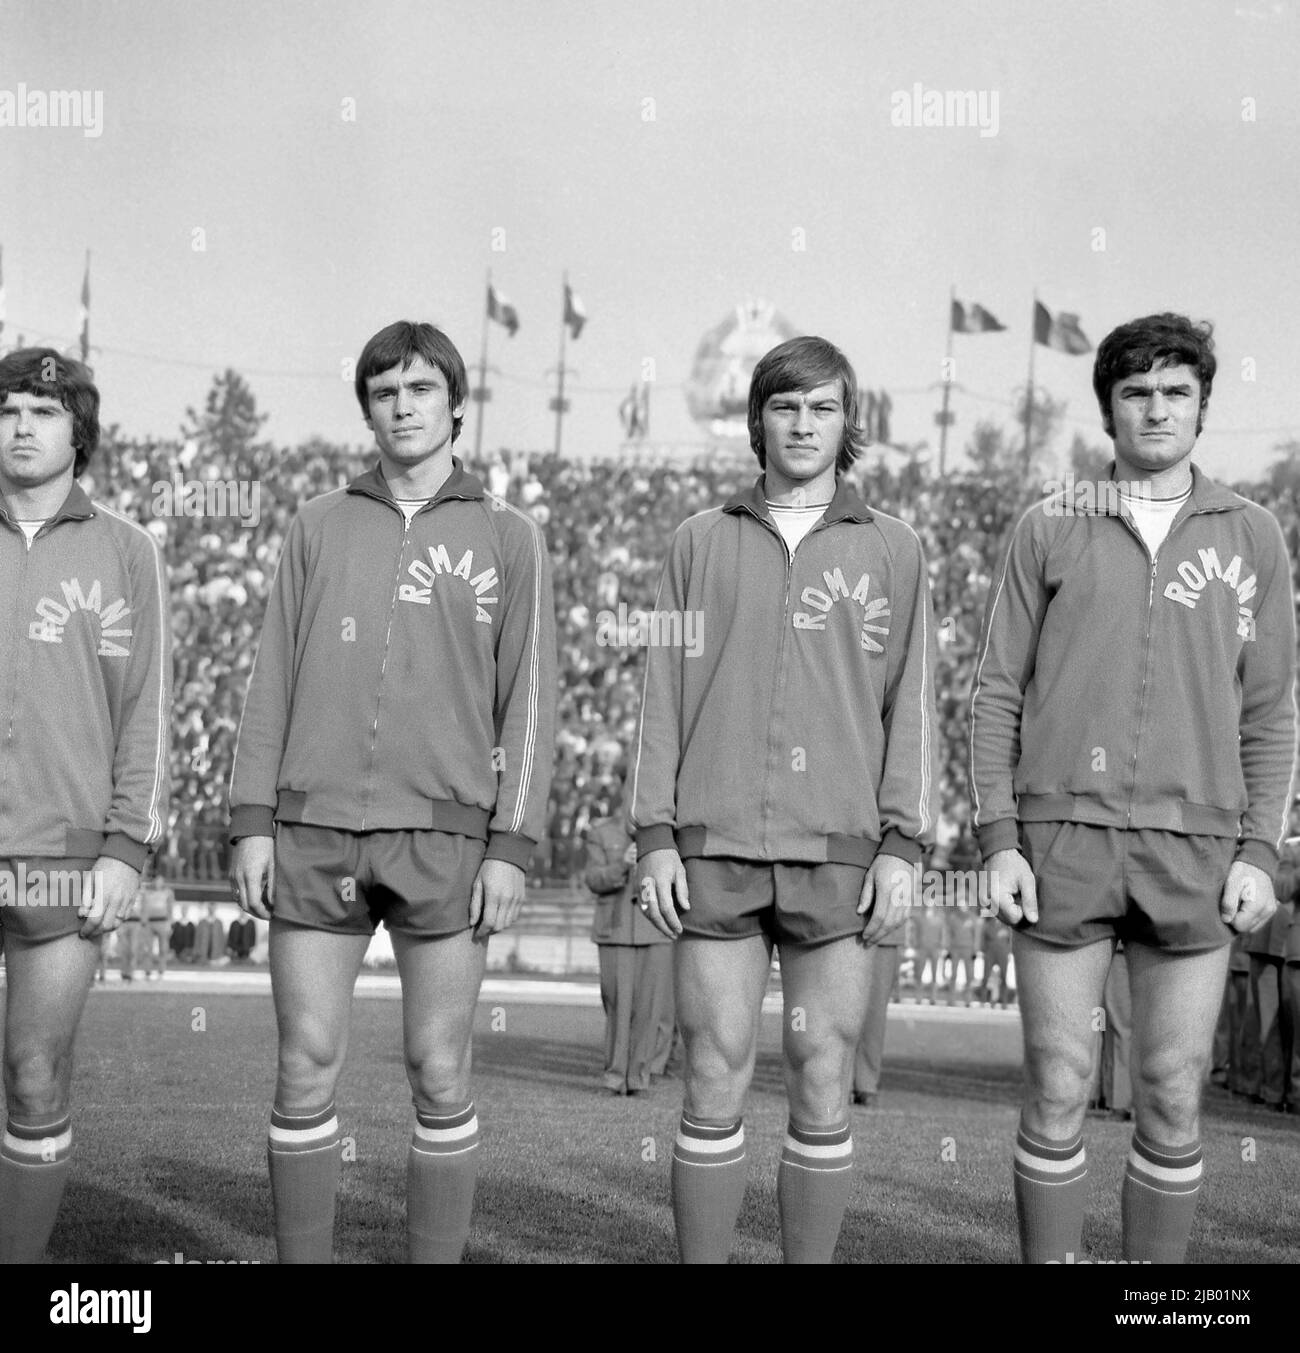 Équipe nationale roumaine de football (soccer), environ 1975. Ştefan Sameş (2nd à partir de la gauche) et Ludovic Sătmăreanu (à droite). Banque D'Images